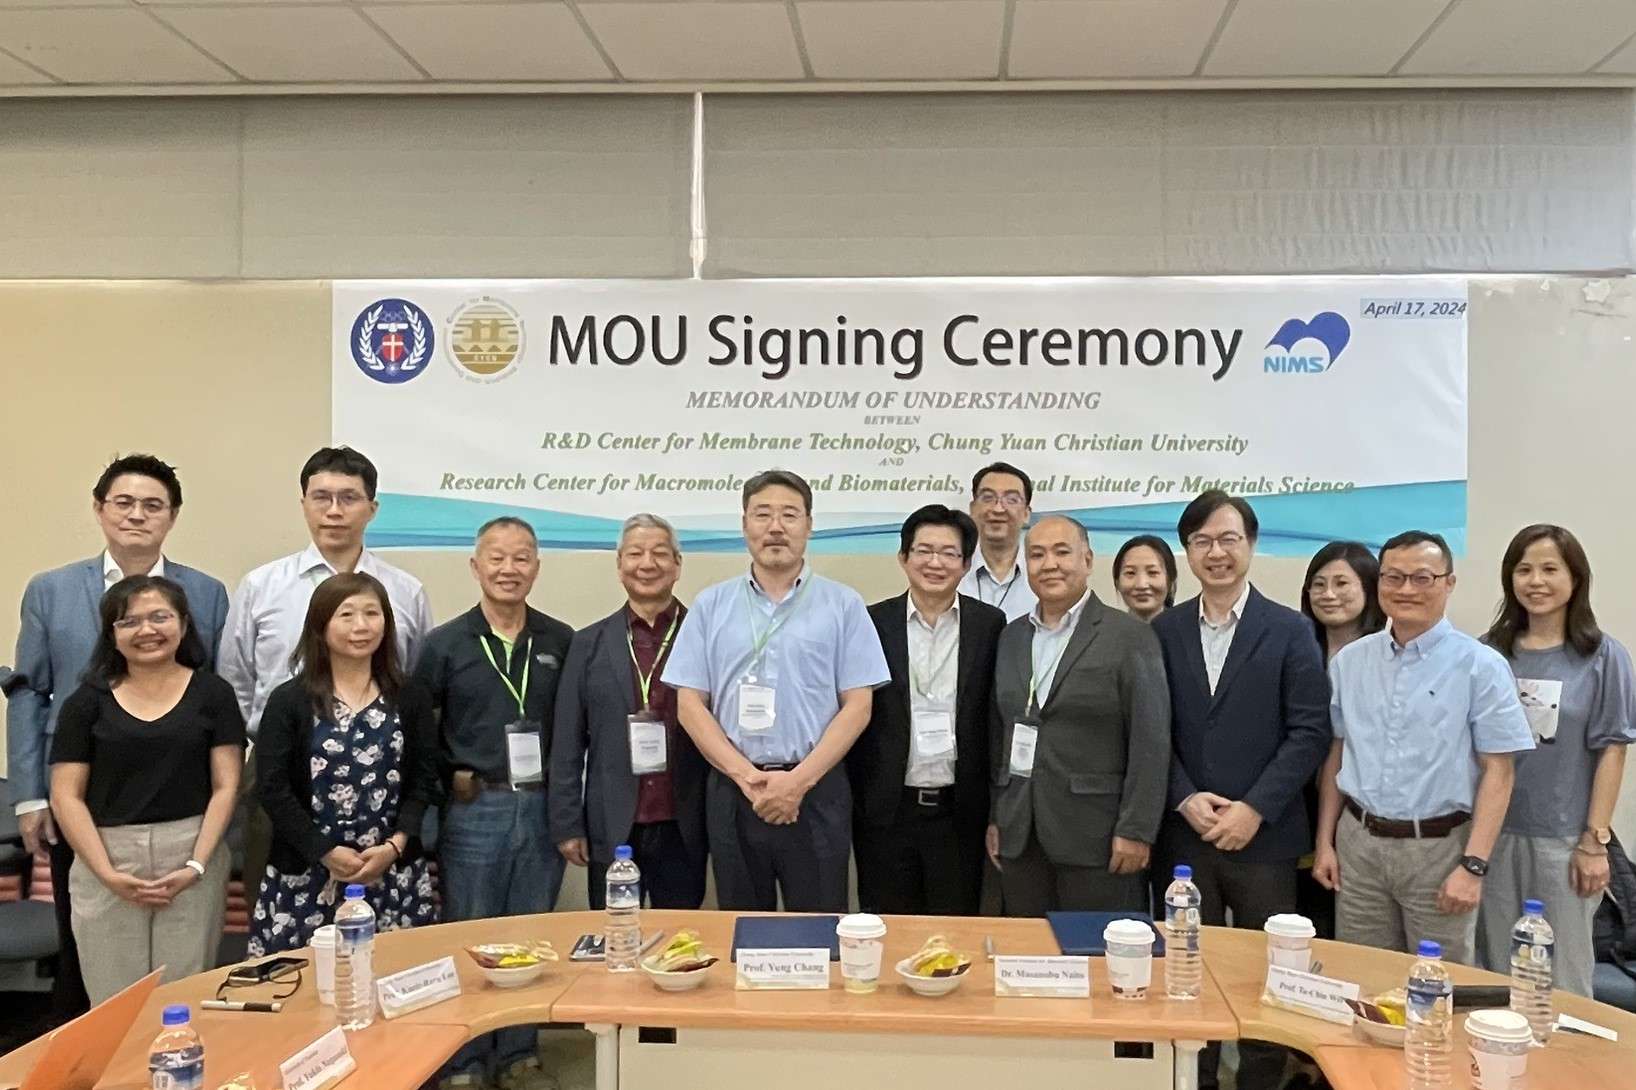 中原大學與日本國立材料研究院簽署MOU　攜手推動科學技術發展